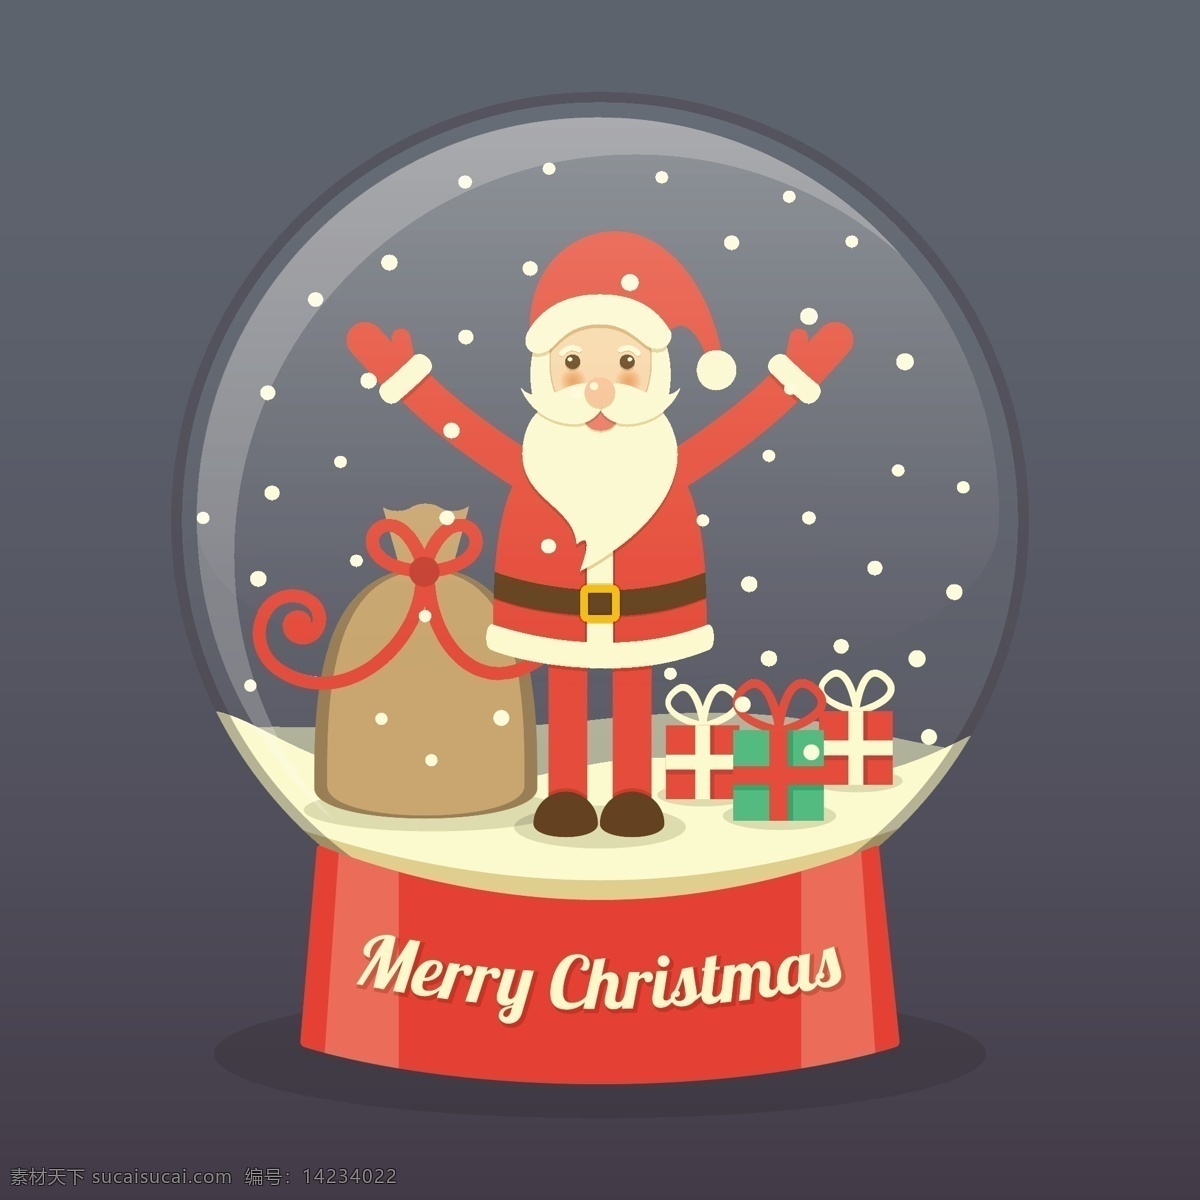 santa 一个 玻璃球 圣诞树 星 卡 家人 圣诞快乐 冬天 圣诞卡 圣诞 圣诞老人 玻璃 雪花 装饰 球 冷 贺卡